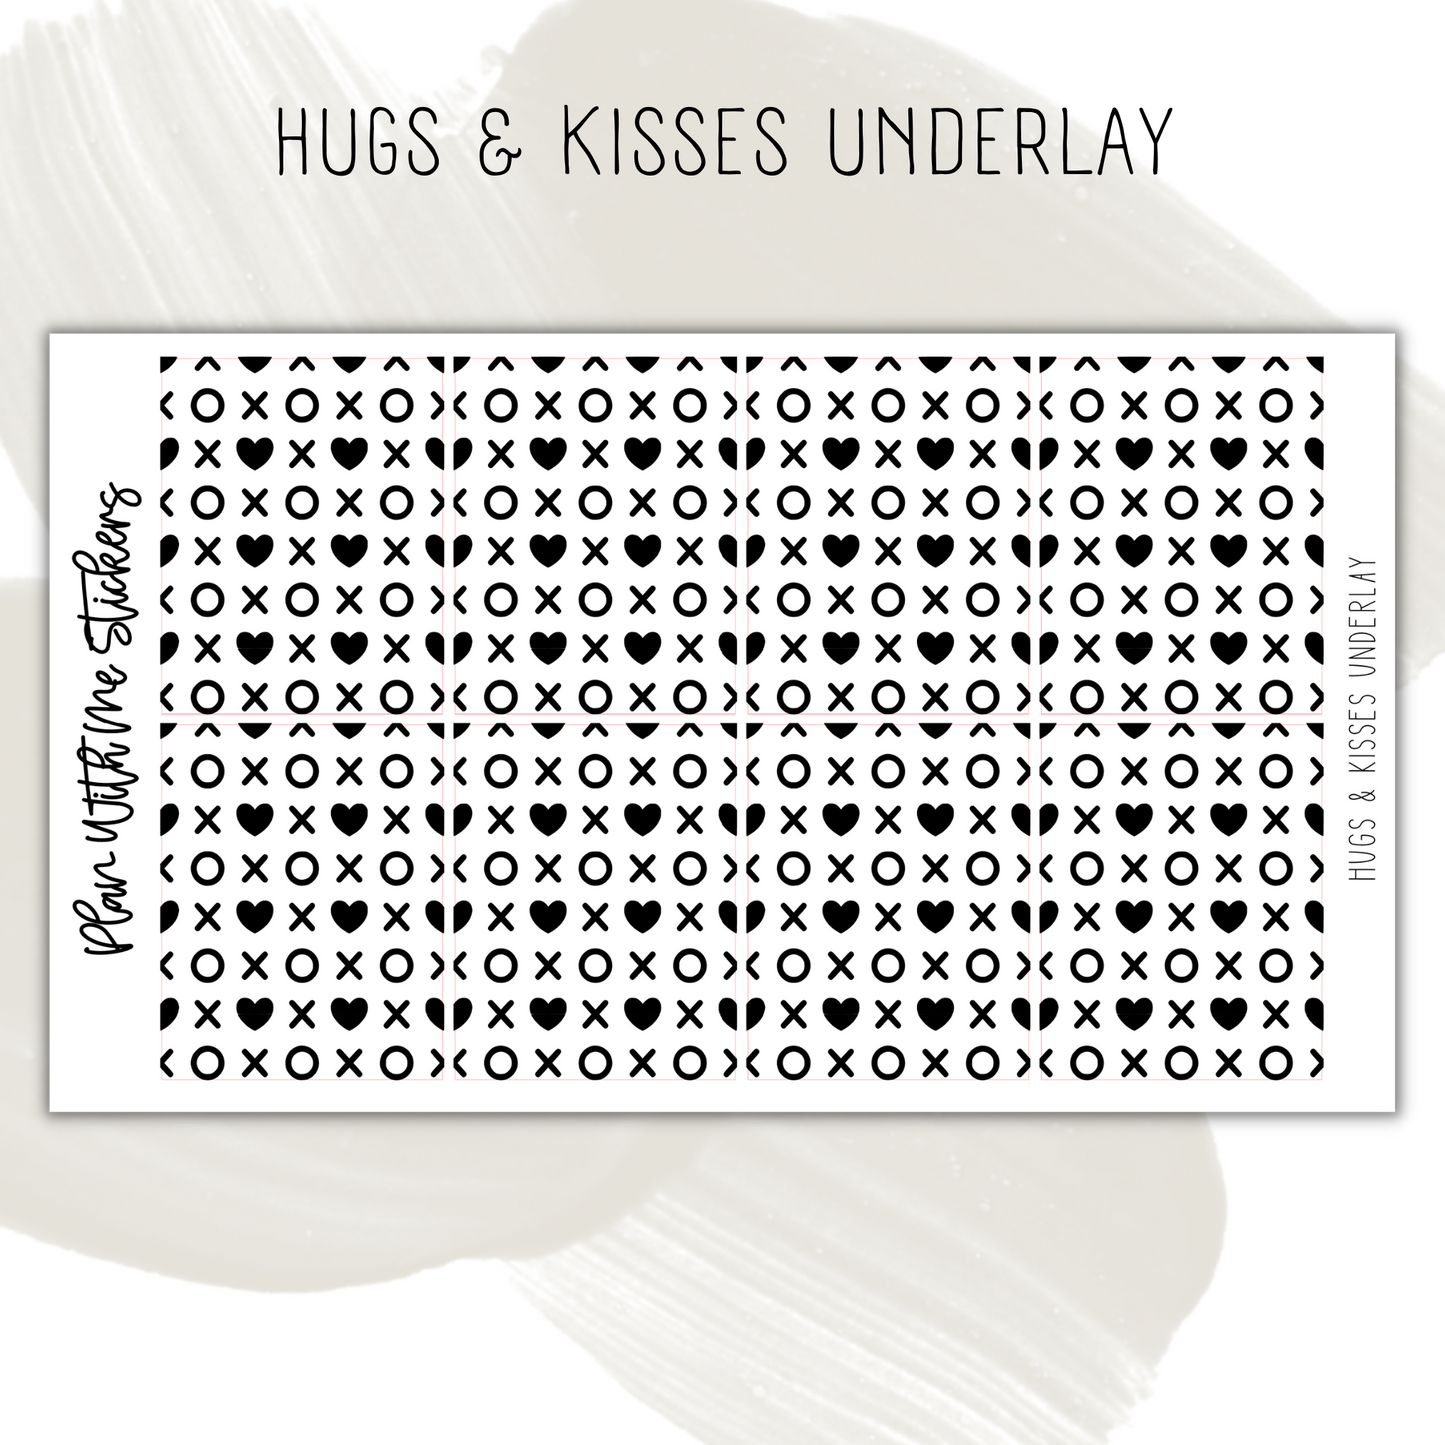 Hugs & Kisses Underlay